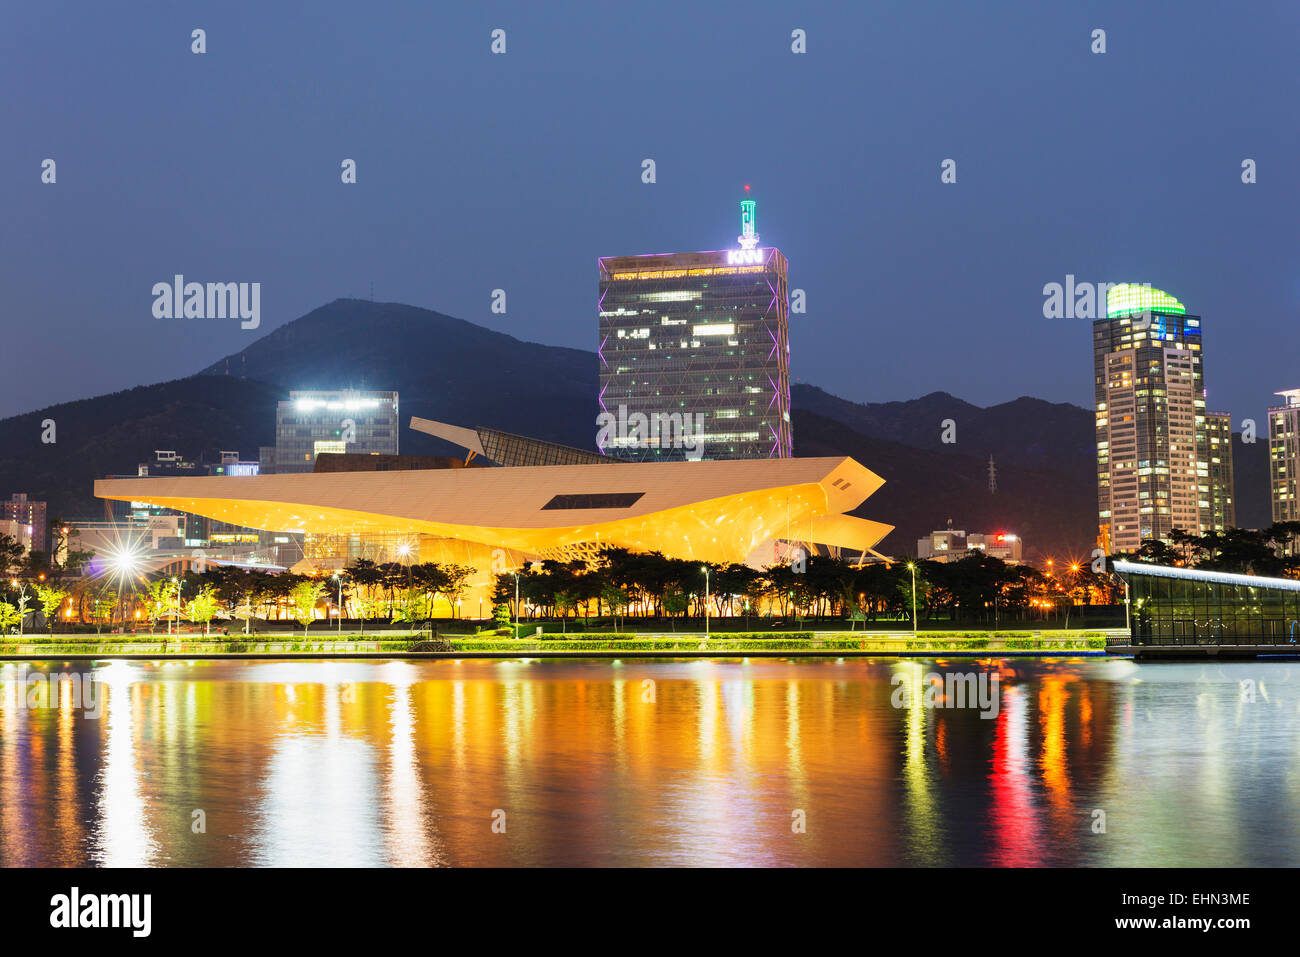 Asia, Republic of Korea, South Korea, Busan, Busan Cinema Center with cantilever roof Stock Photo